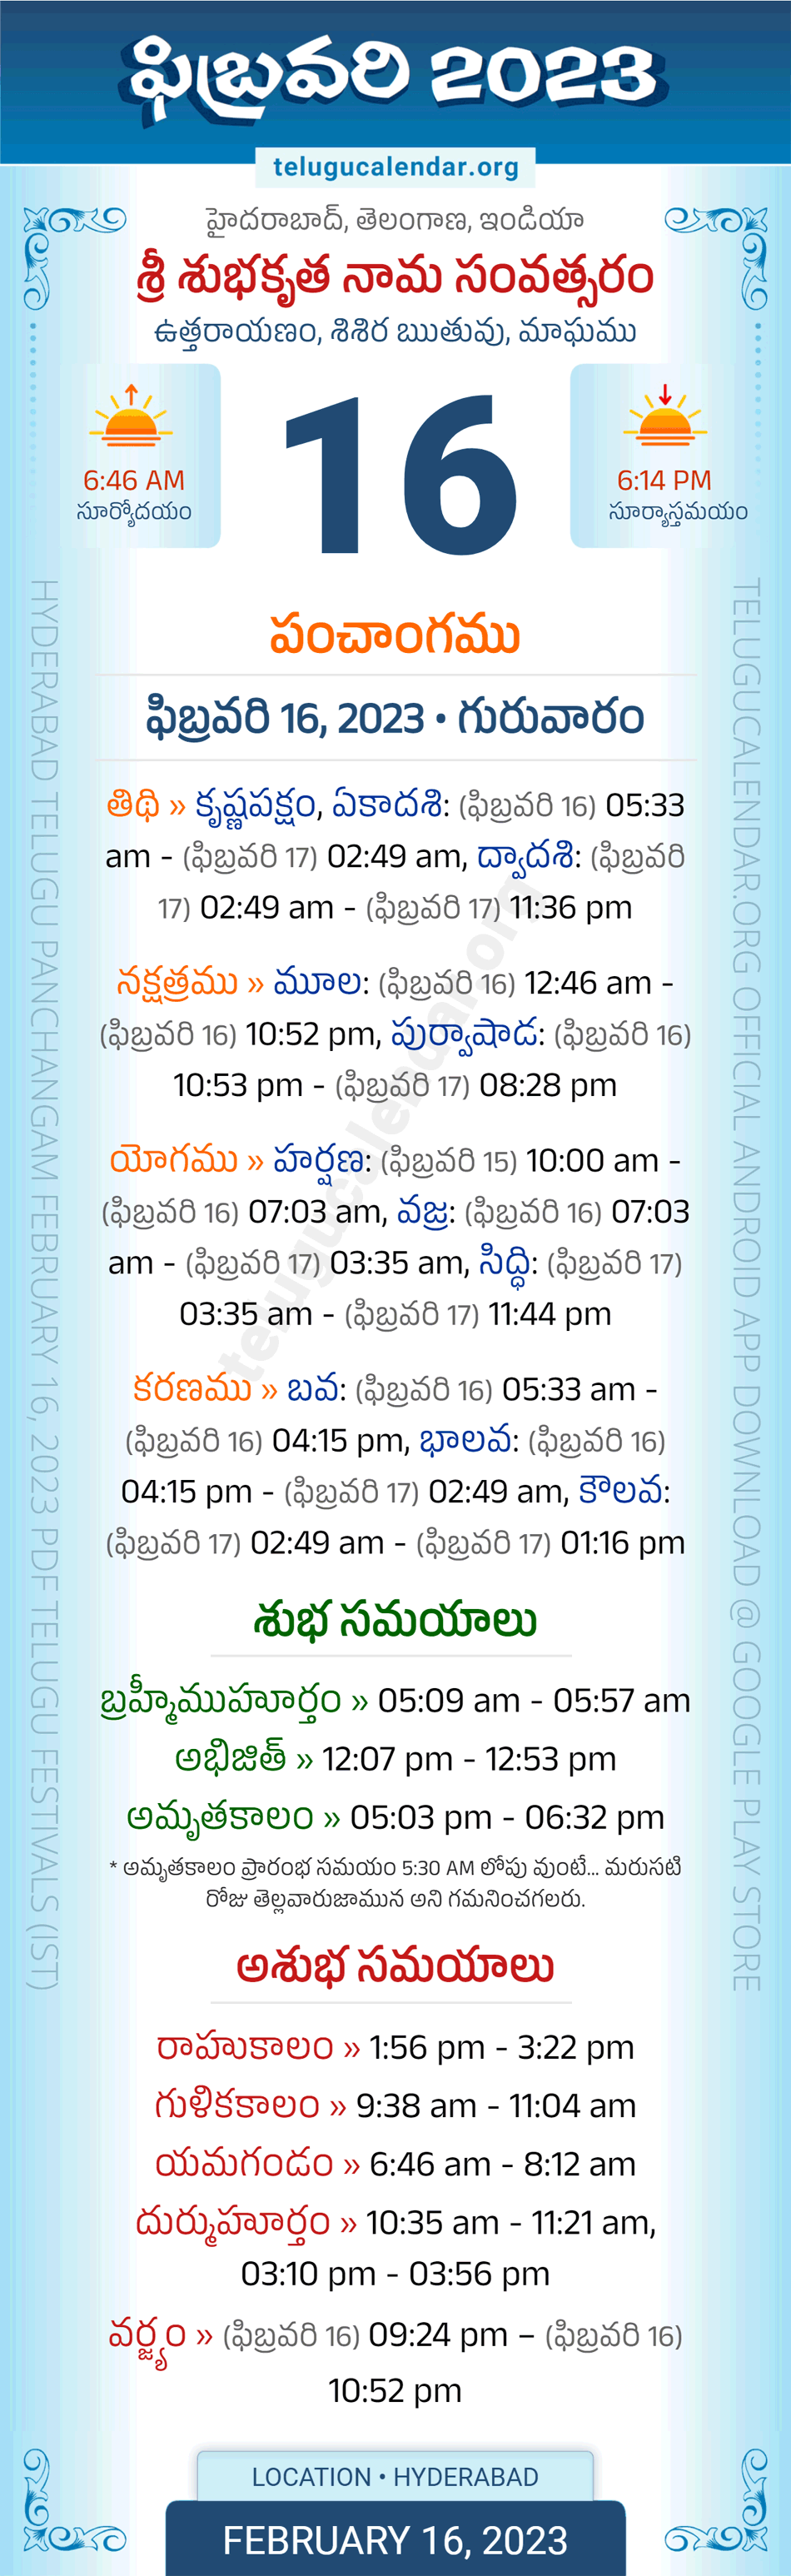 Telangana Panchangam February 16 2023 Telugu Calendar Daily